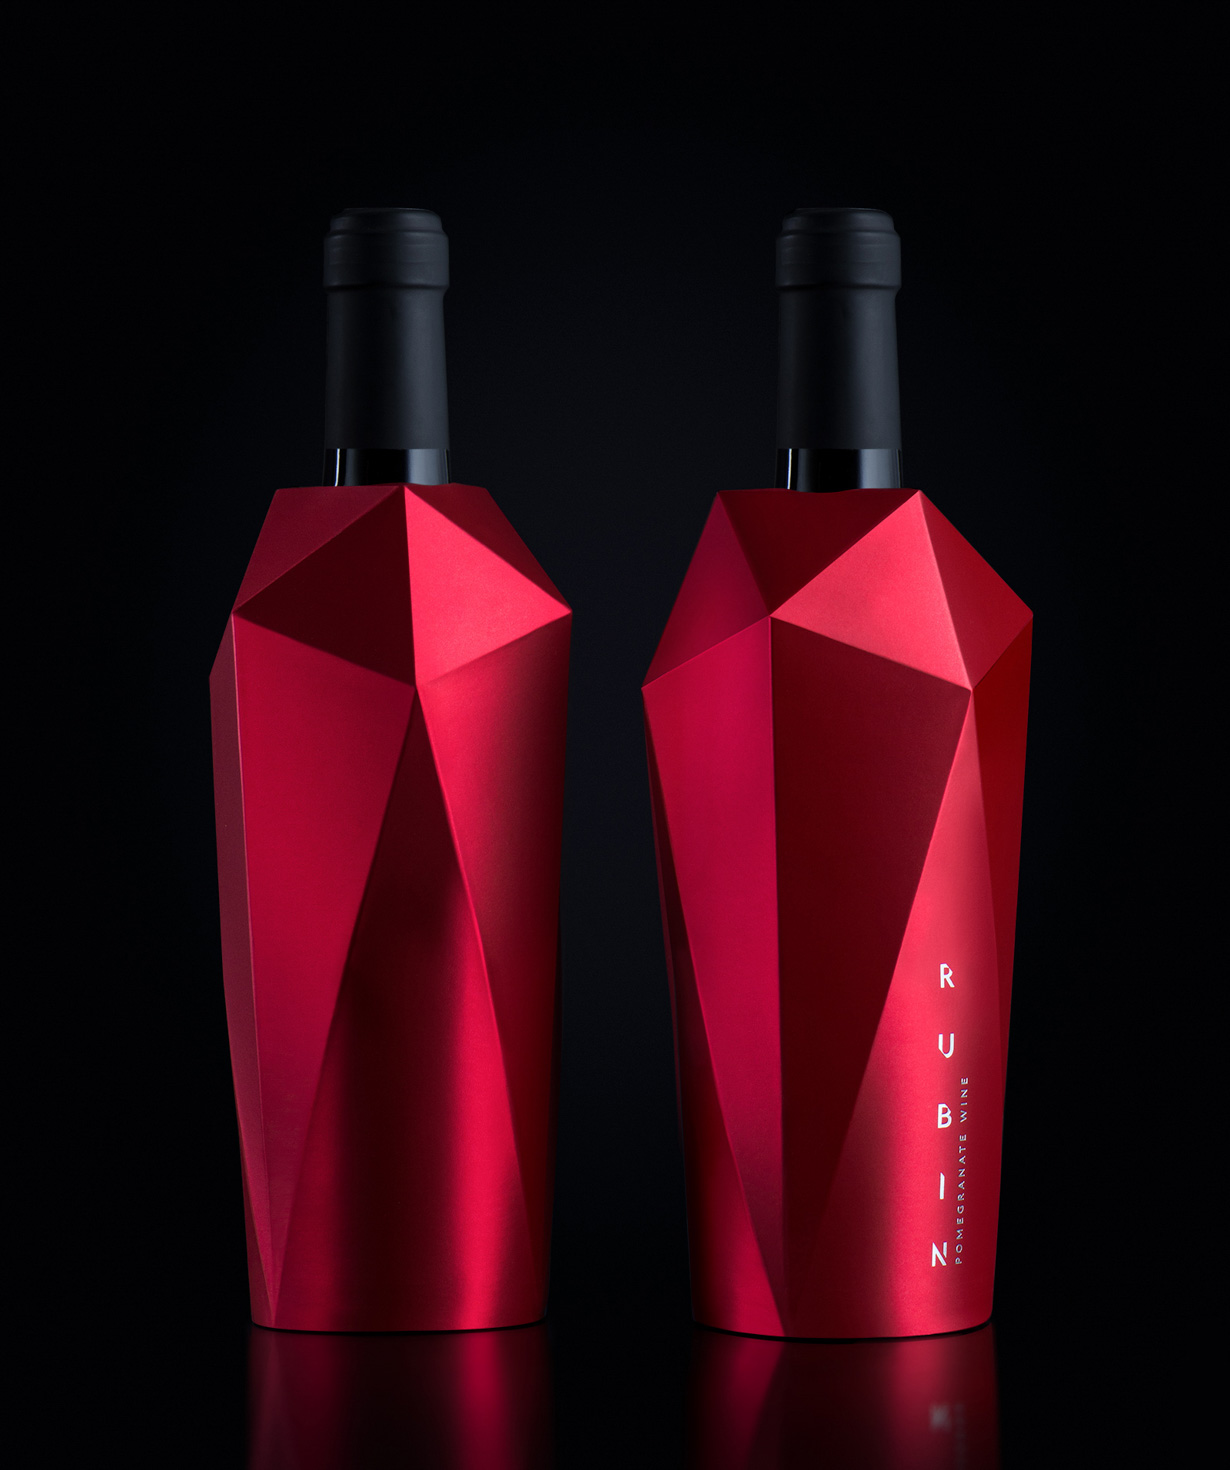 Գինի «Ռուբին» կարմիր՝ կիսաքաղցր 750մլ